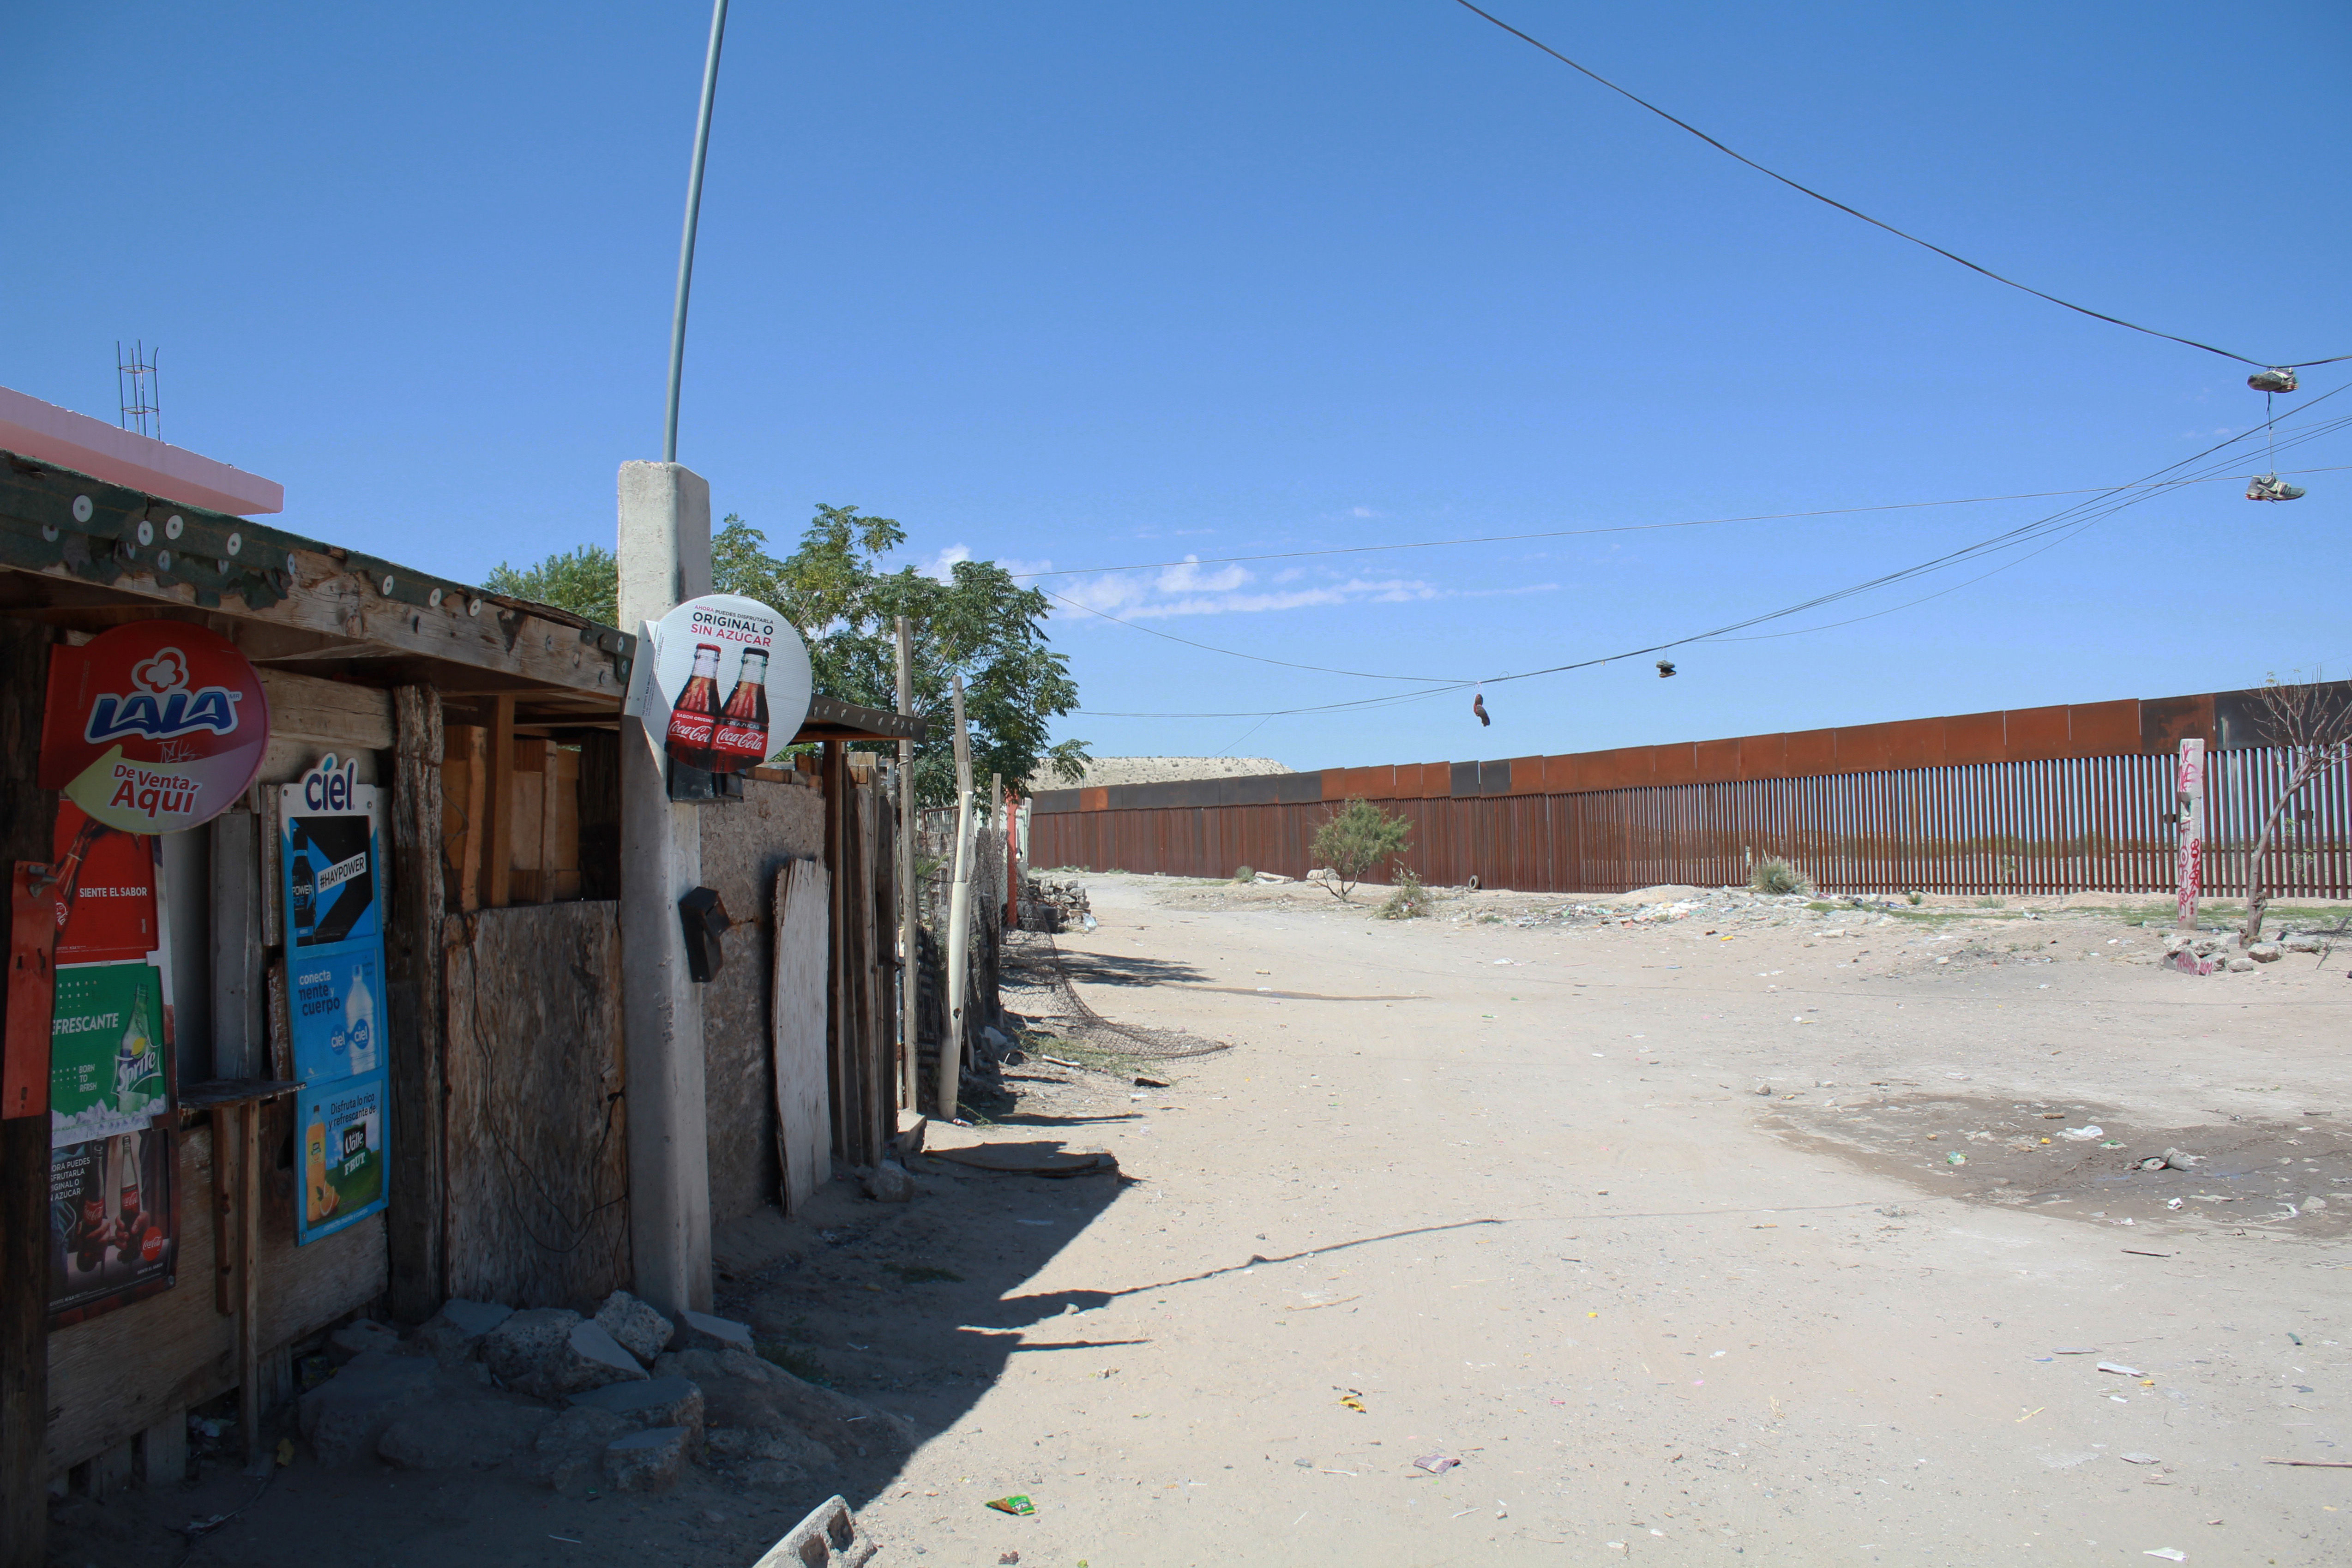  Estadounidense construye su propio muro en la frontera Ciudad Juárez-El Paso